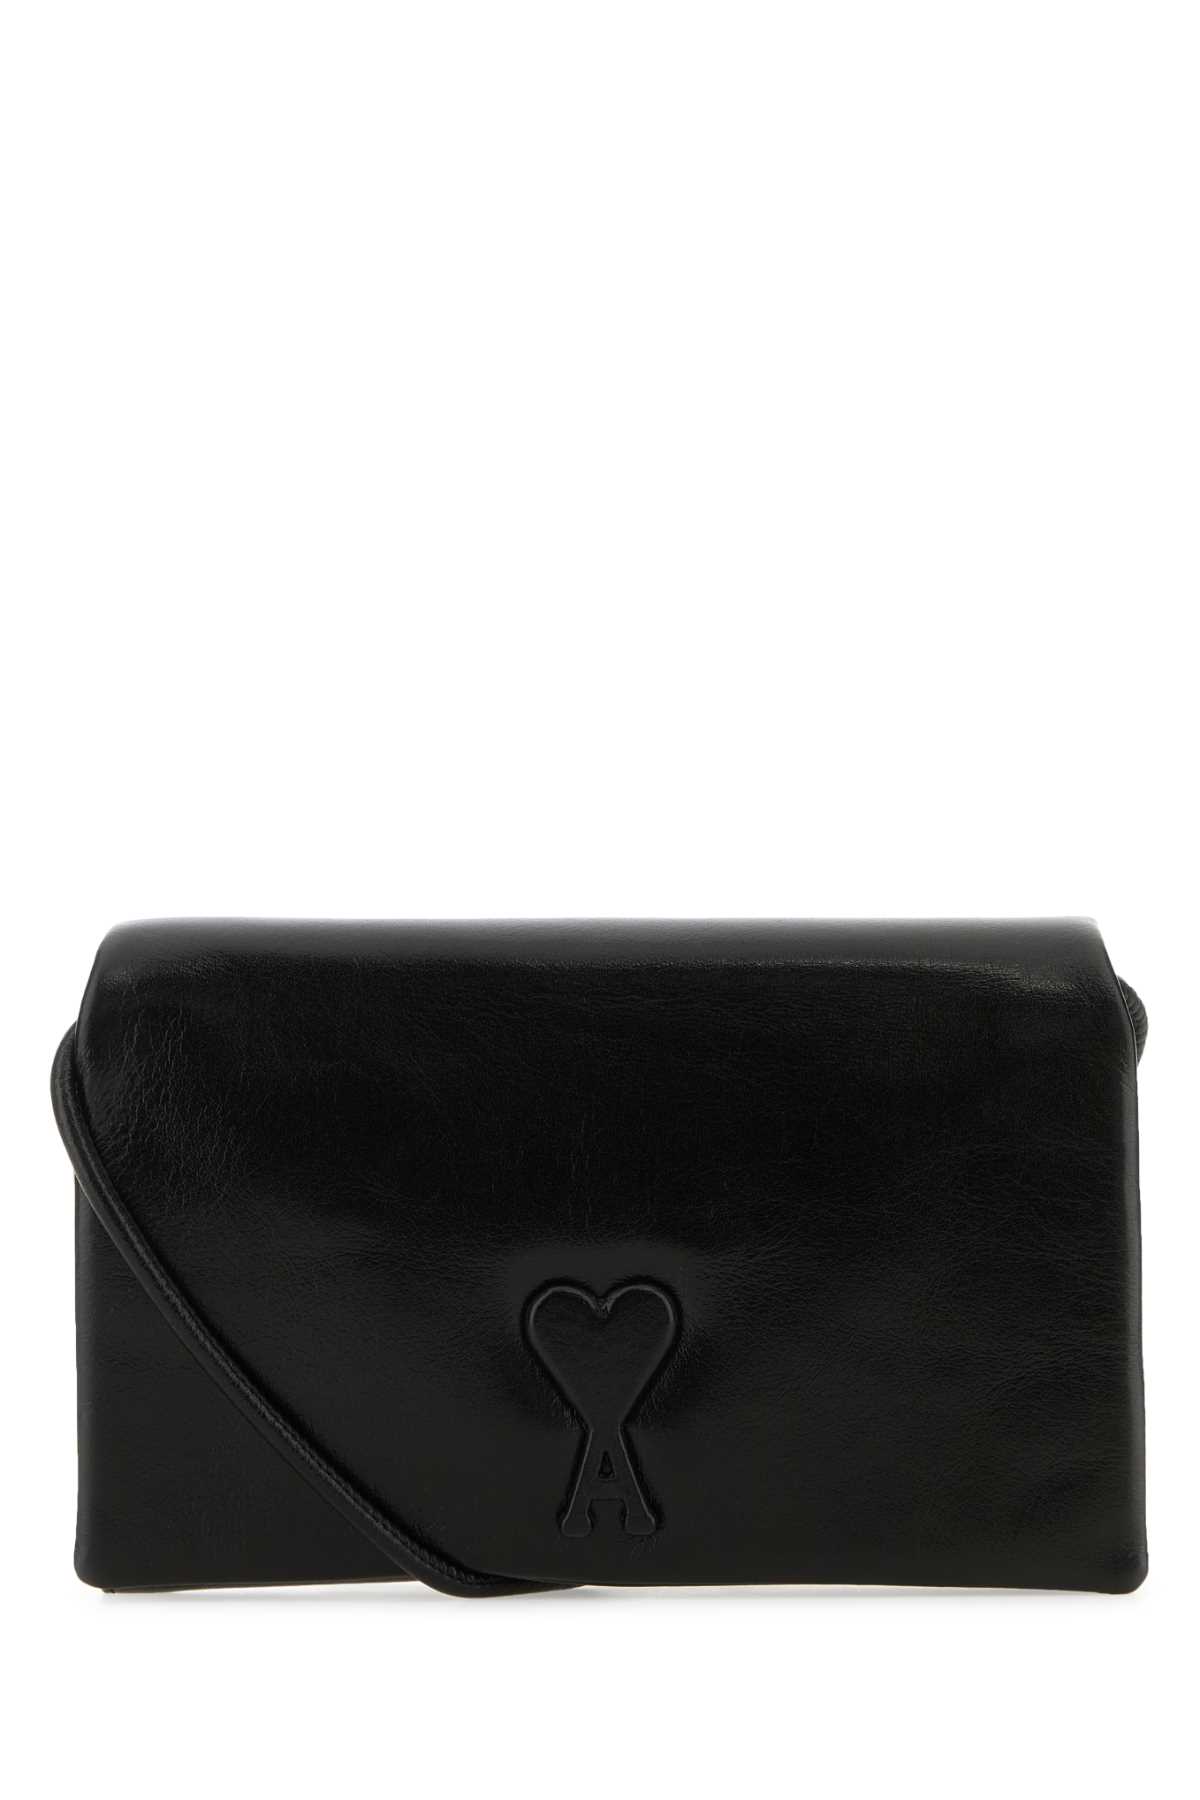 Shop Ami Alexandre Mattiussi Black Leather Voulez-vous Wallet